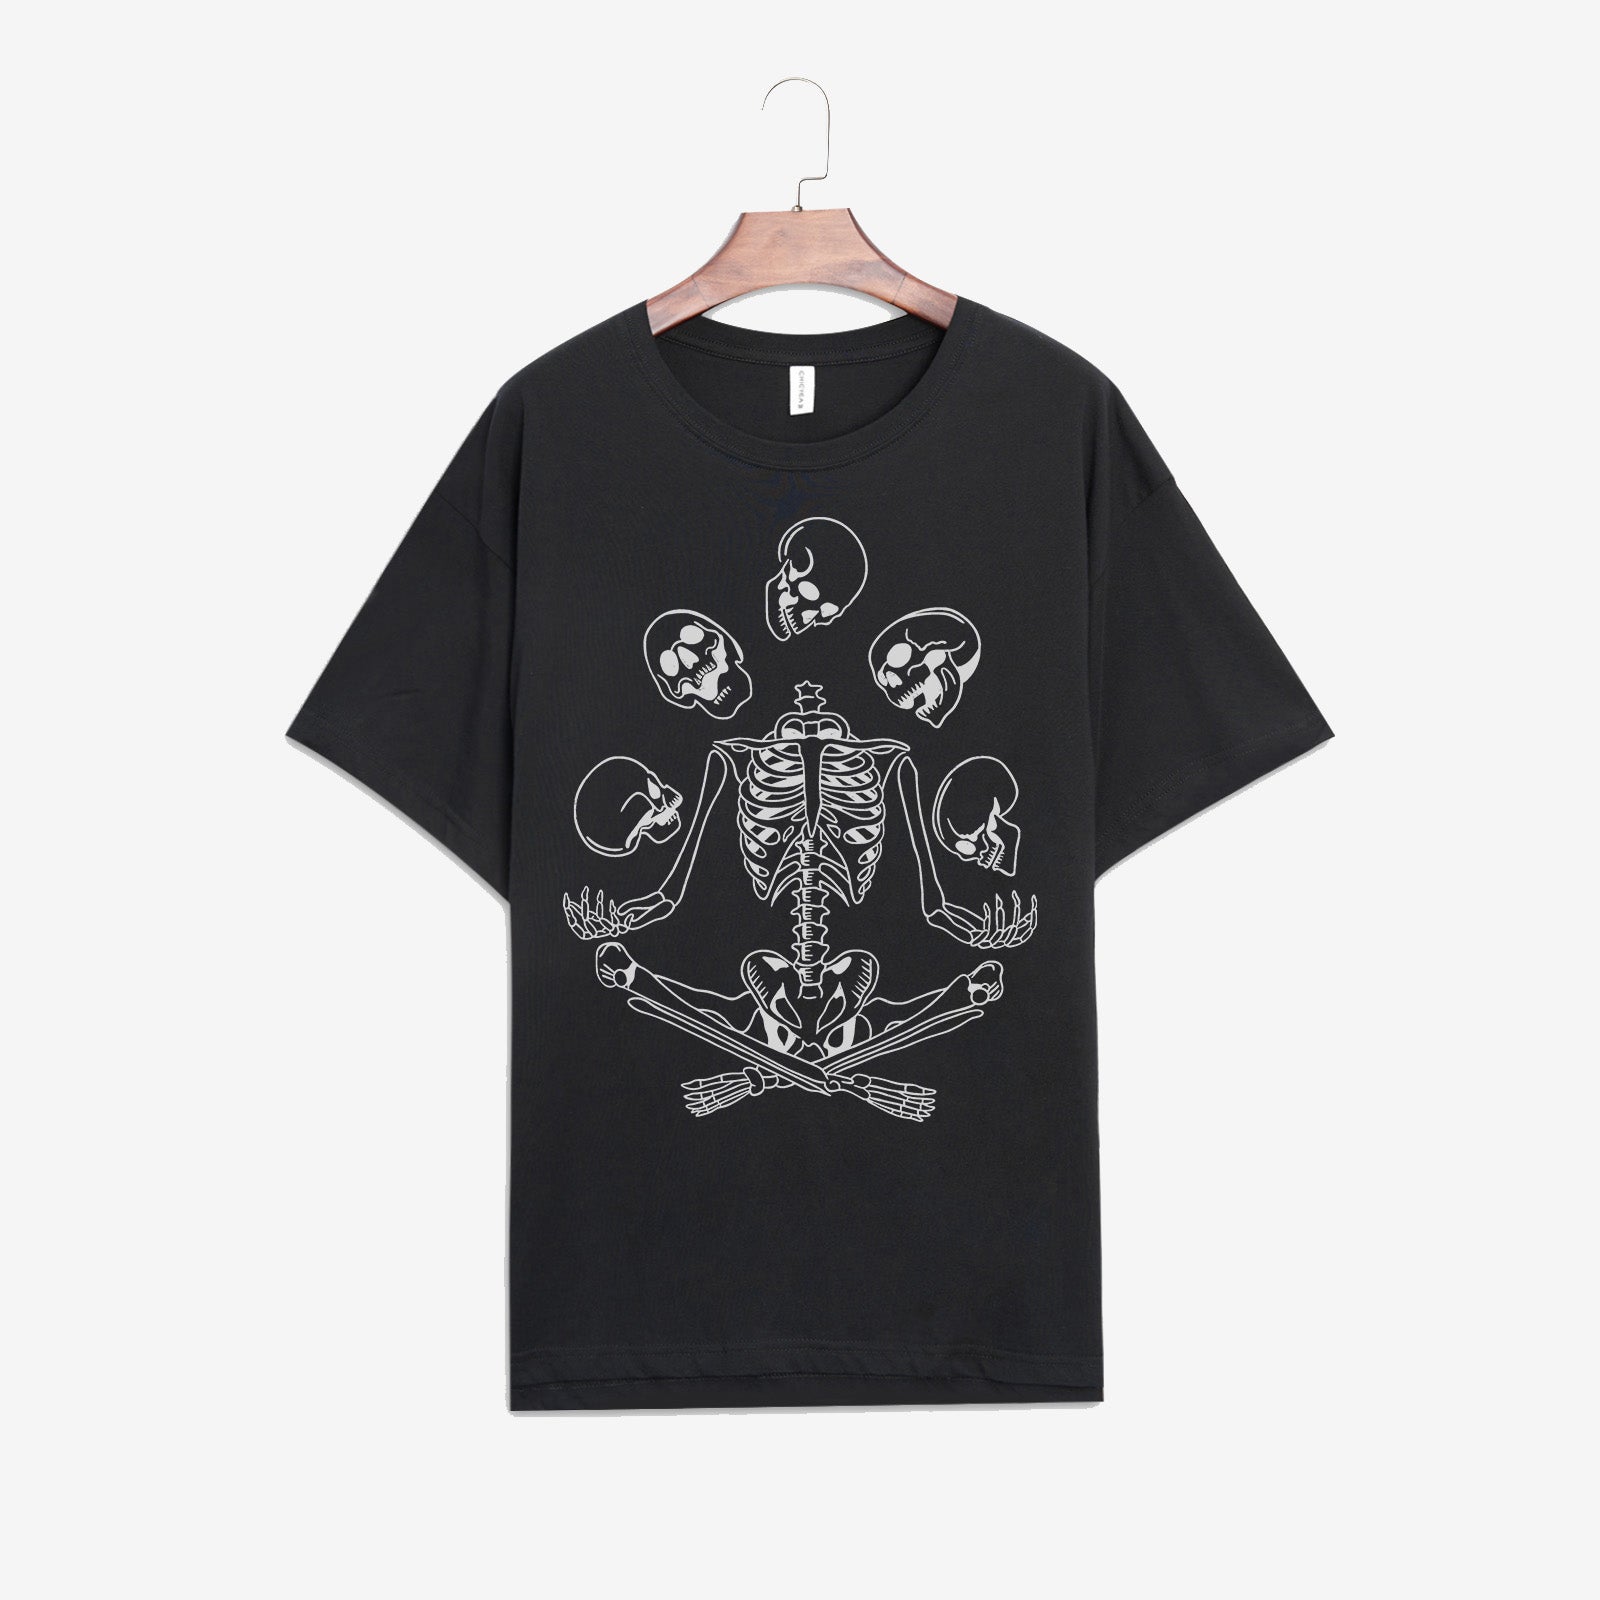 Minnieskull Skull Juggling Print Woman Designer T-Shirt - chicyea